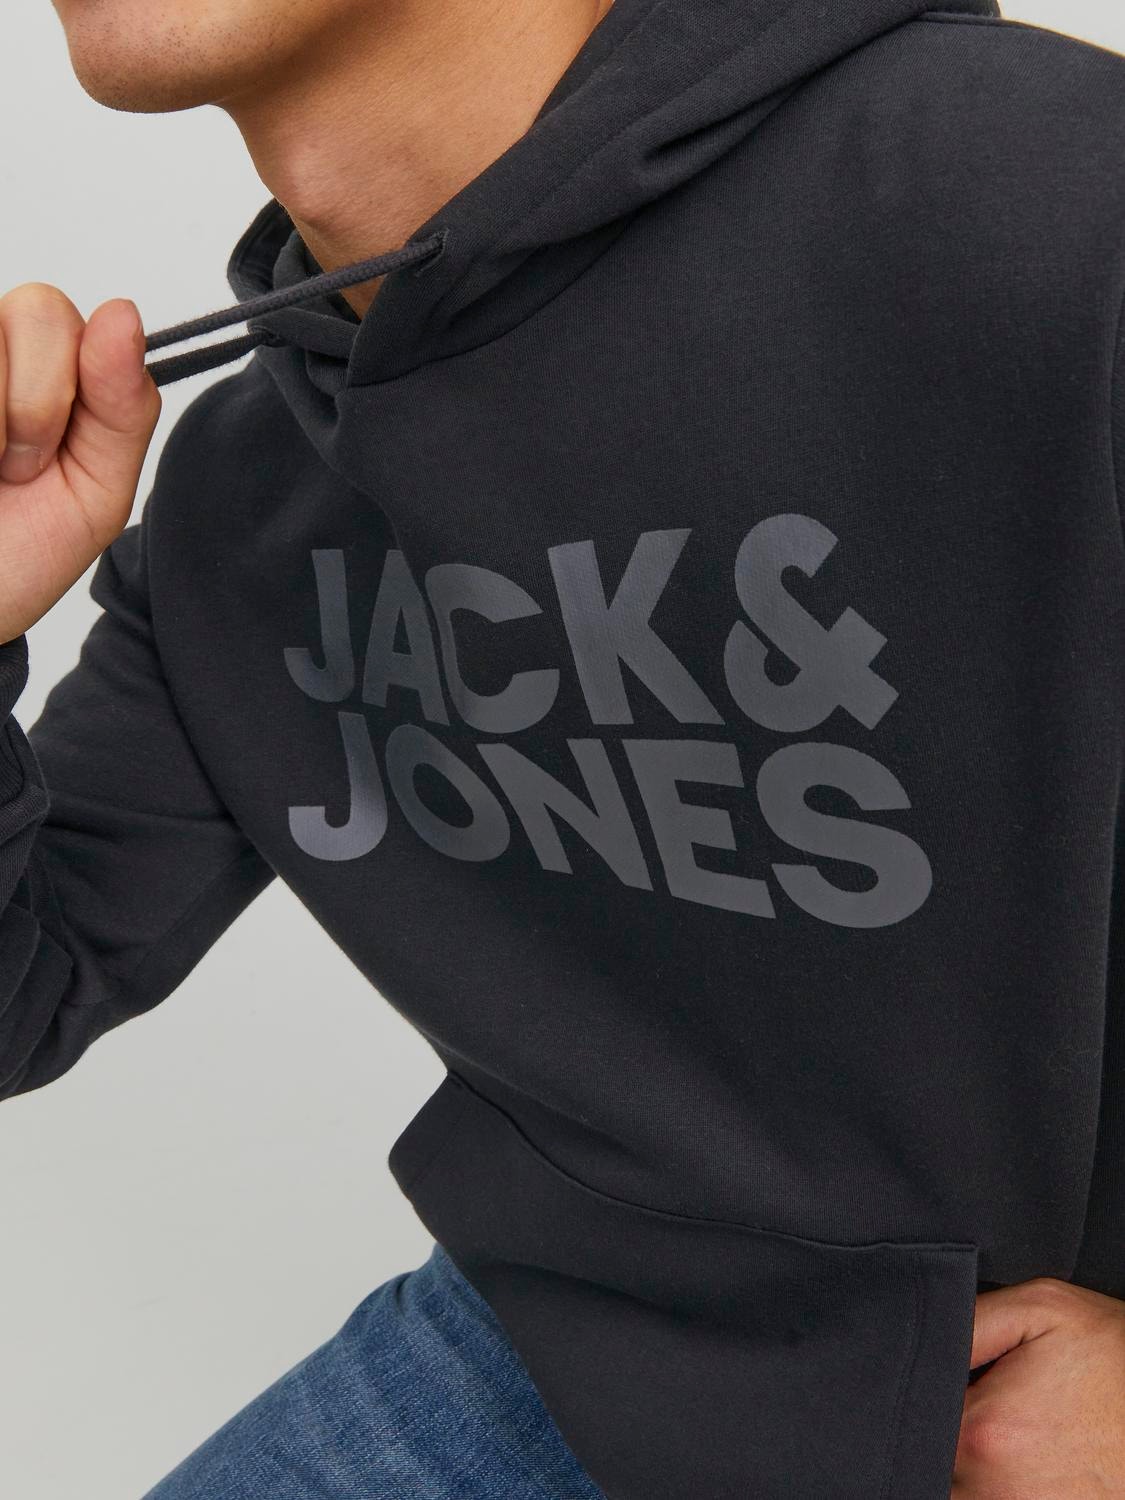 Jack & Jones Logo Kapuzenpullover -Black - 12152840